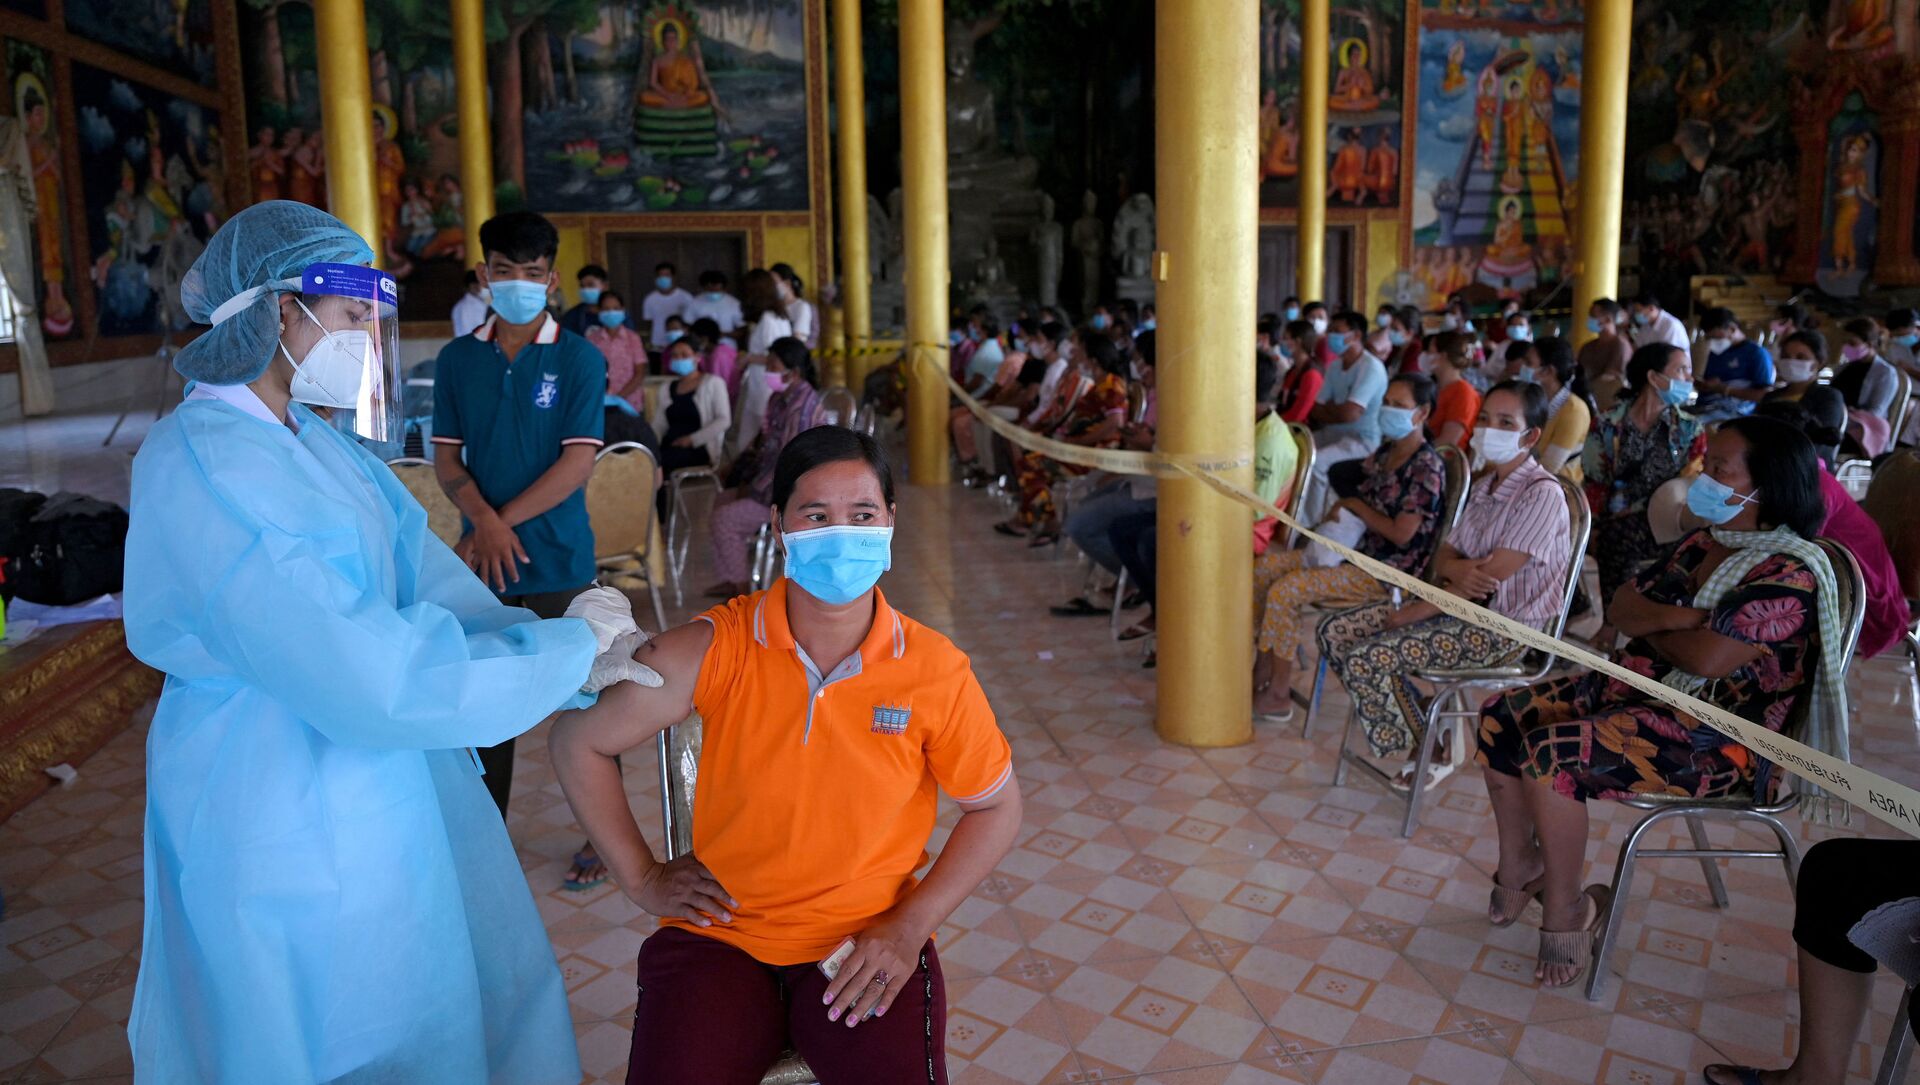 Tiêm chủng hàng loạt chống coronavirus bằng vắc xin Sinopharm của Trung Quốc ở tỉnh Kandal, Campuchia. - Sputnik Việt Nam, 1920, 15.06.2021